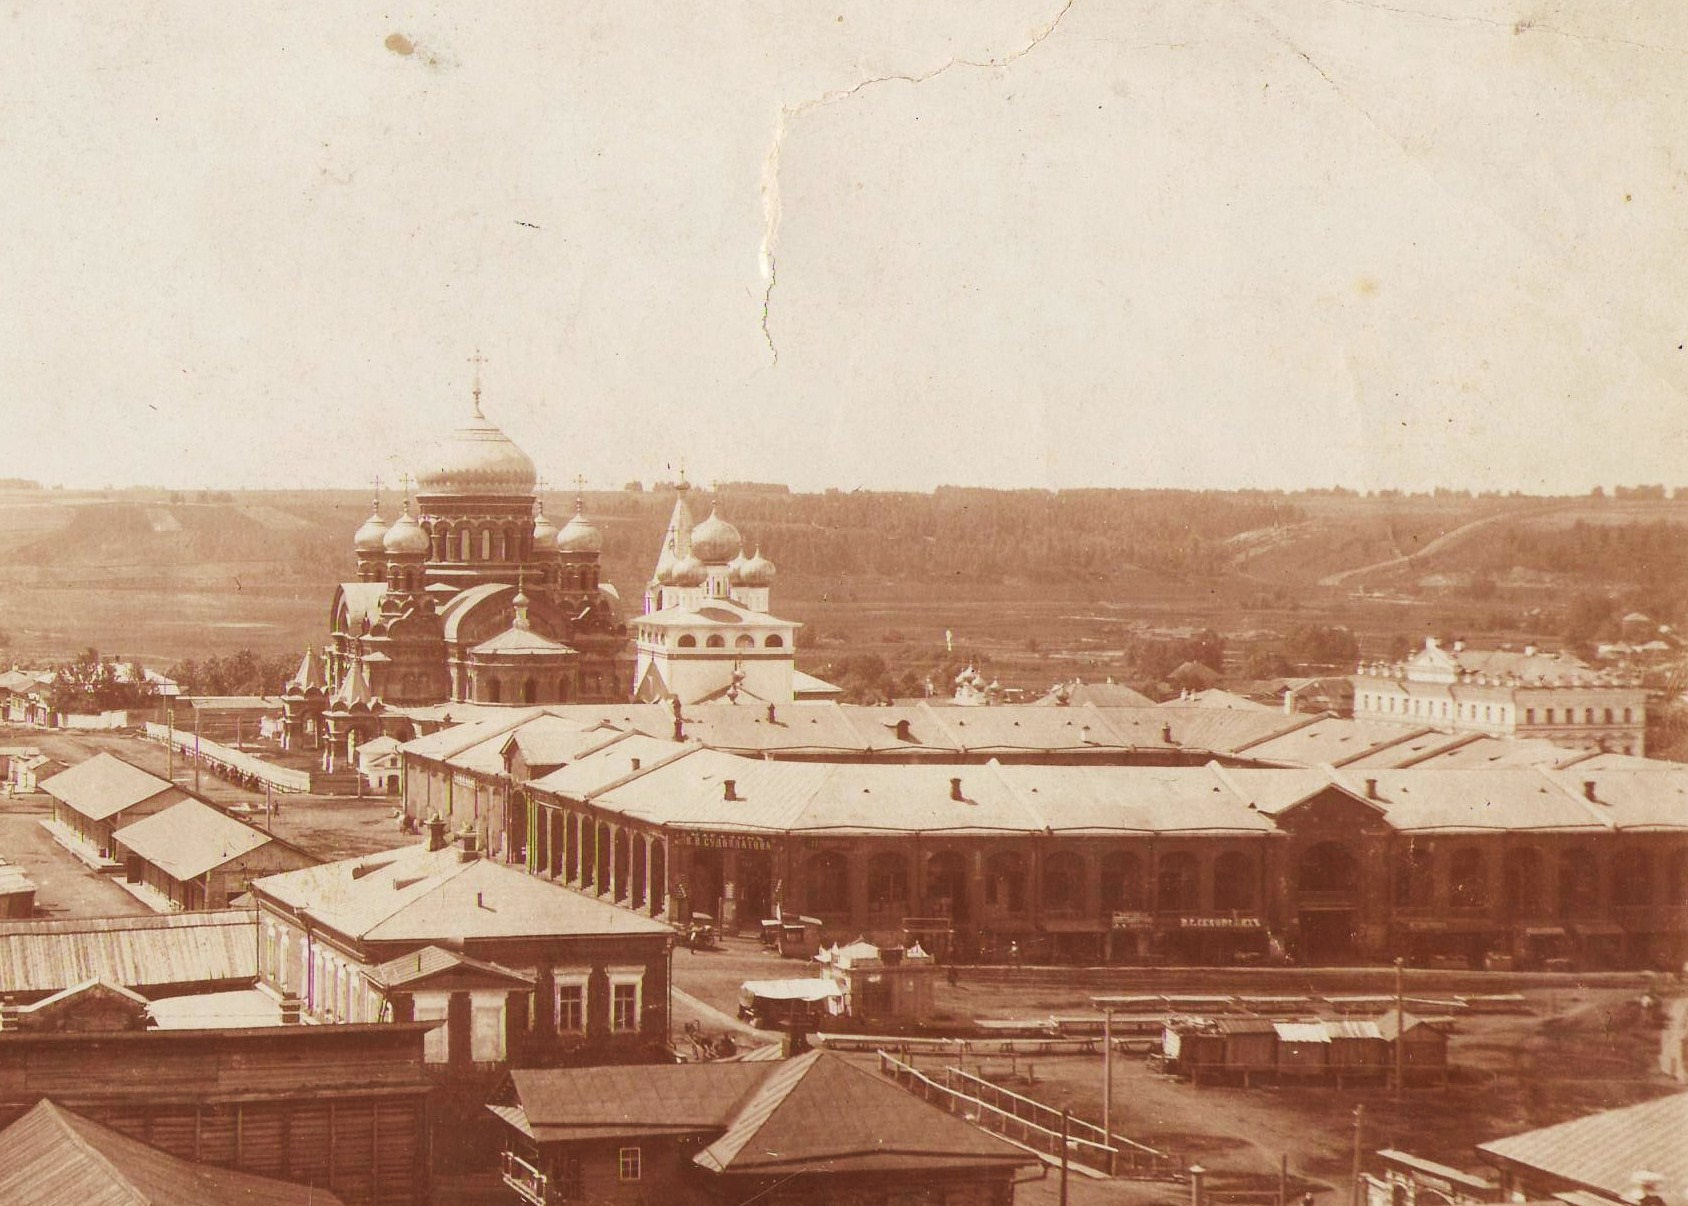 Посмотрите, как выглядела Соборная площадь в Кунгуре еще в начале XX века. Собор снесли в 1930-е годы, остается надеяться, что здание Гостиного двора сохранится на долгие годы